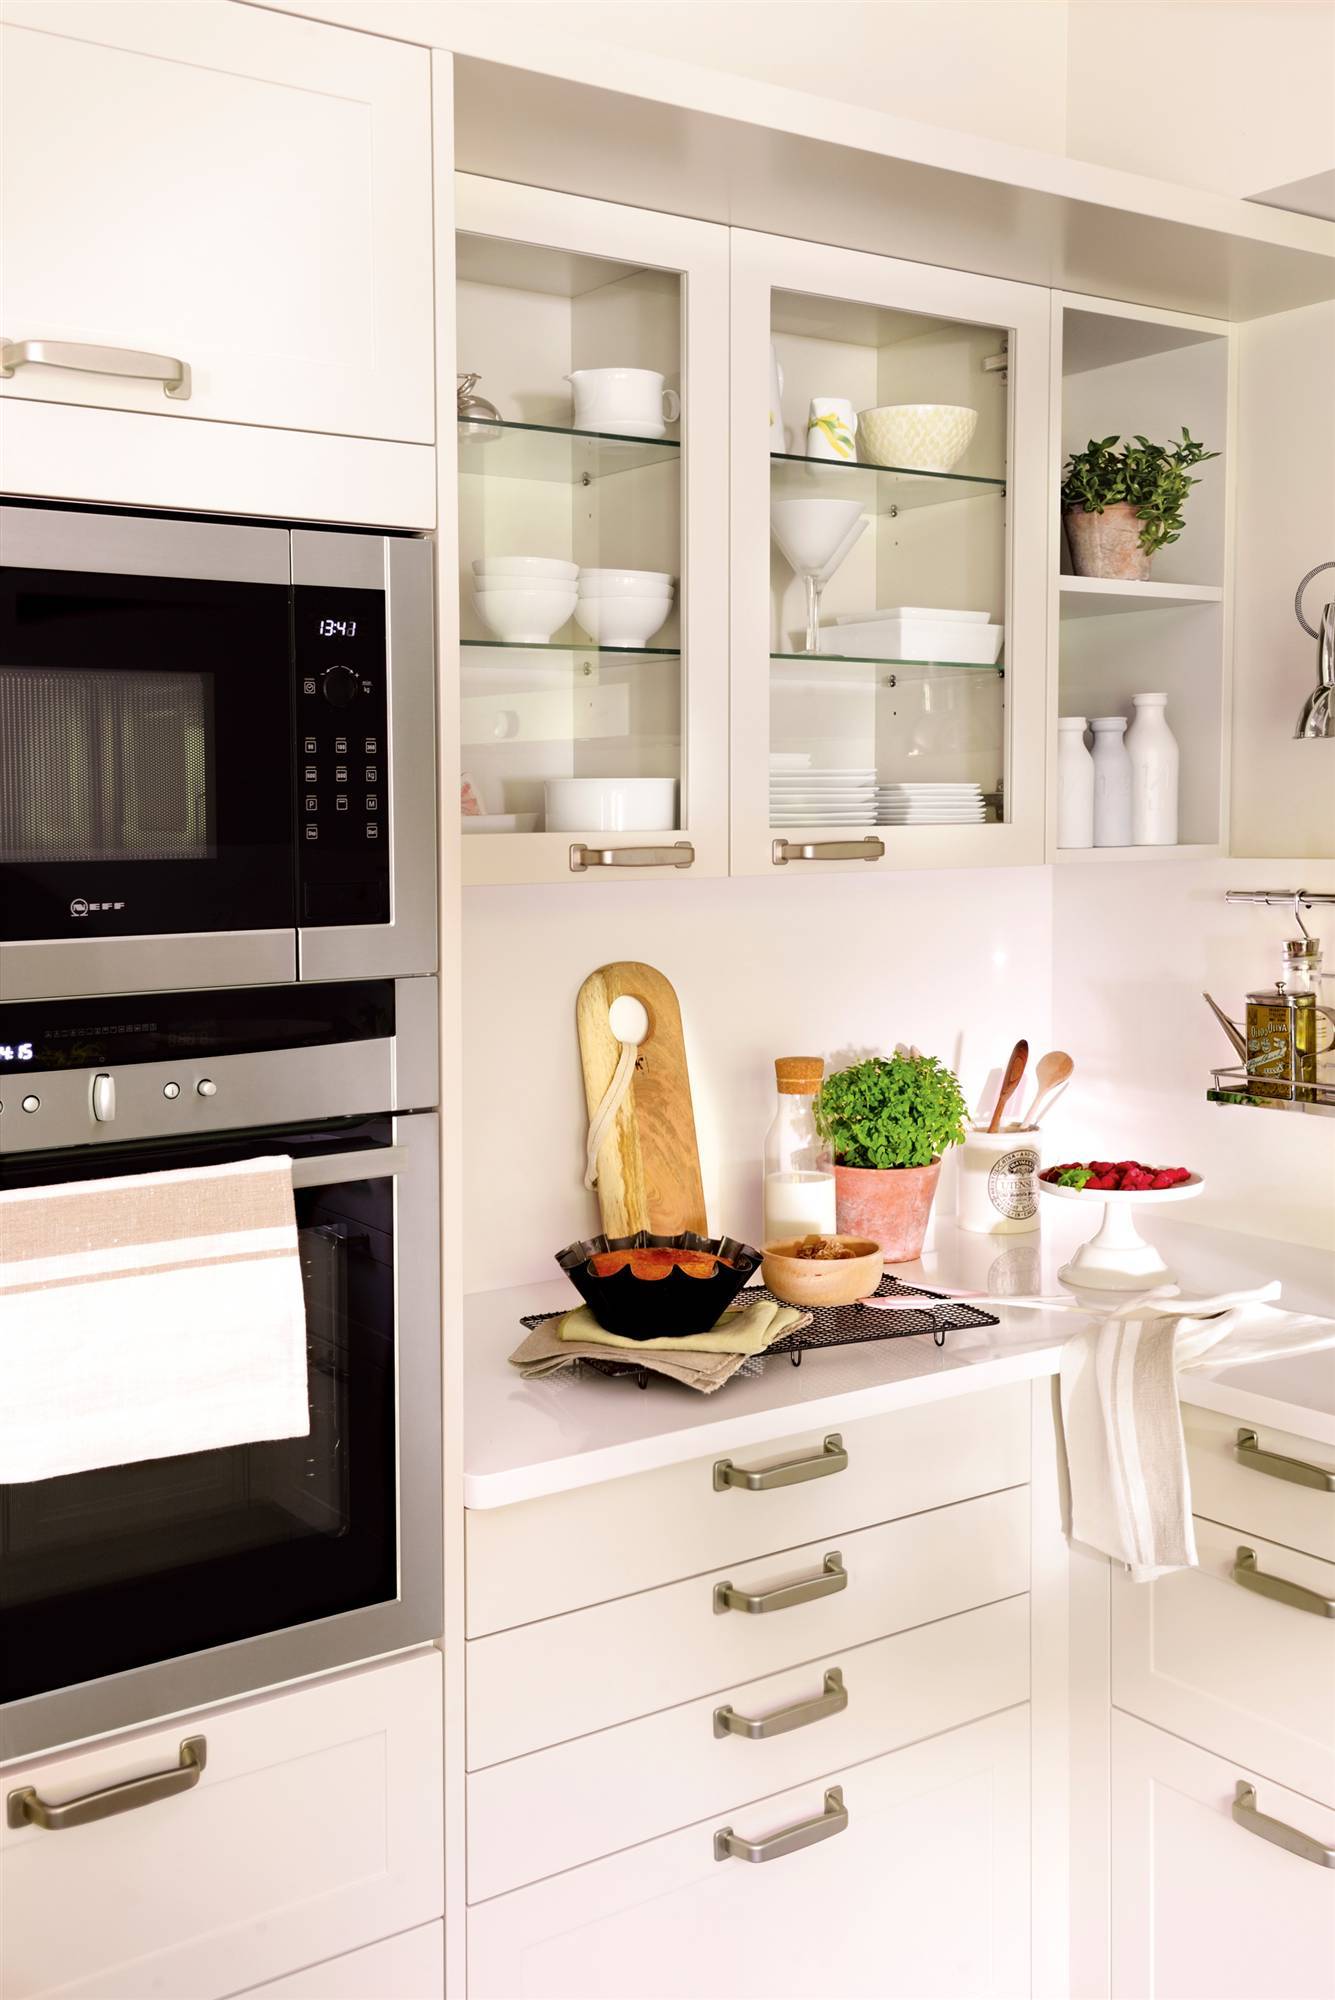 Limpiador de microondas de cocina Limpiador de microondas Limpiador de frigoríficos Adecuado para limpiar hornos microondas y refrigeradores Desodorante para frigorífico 